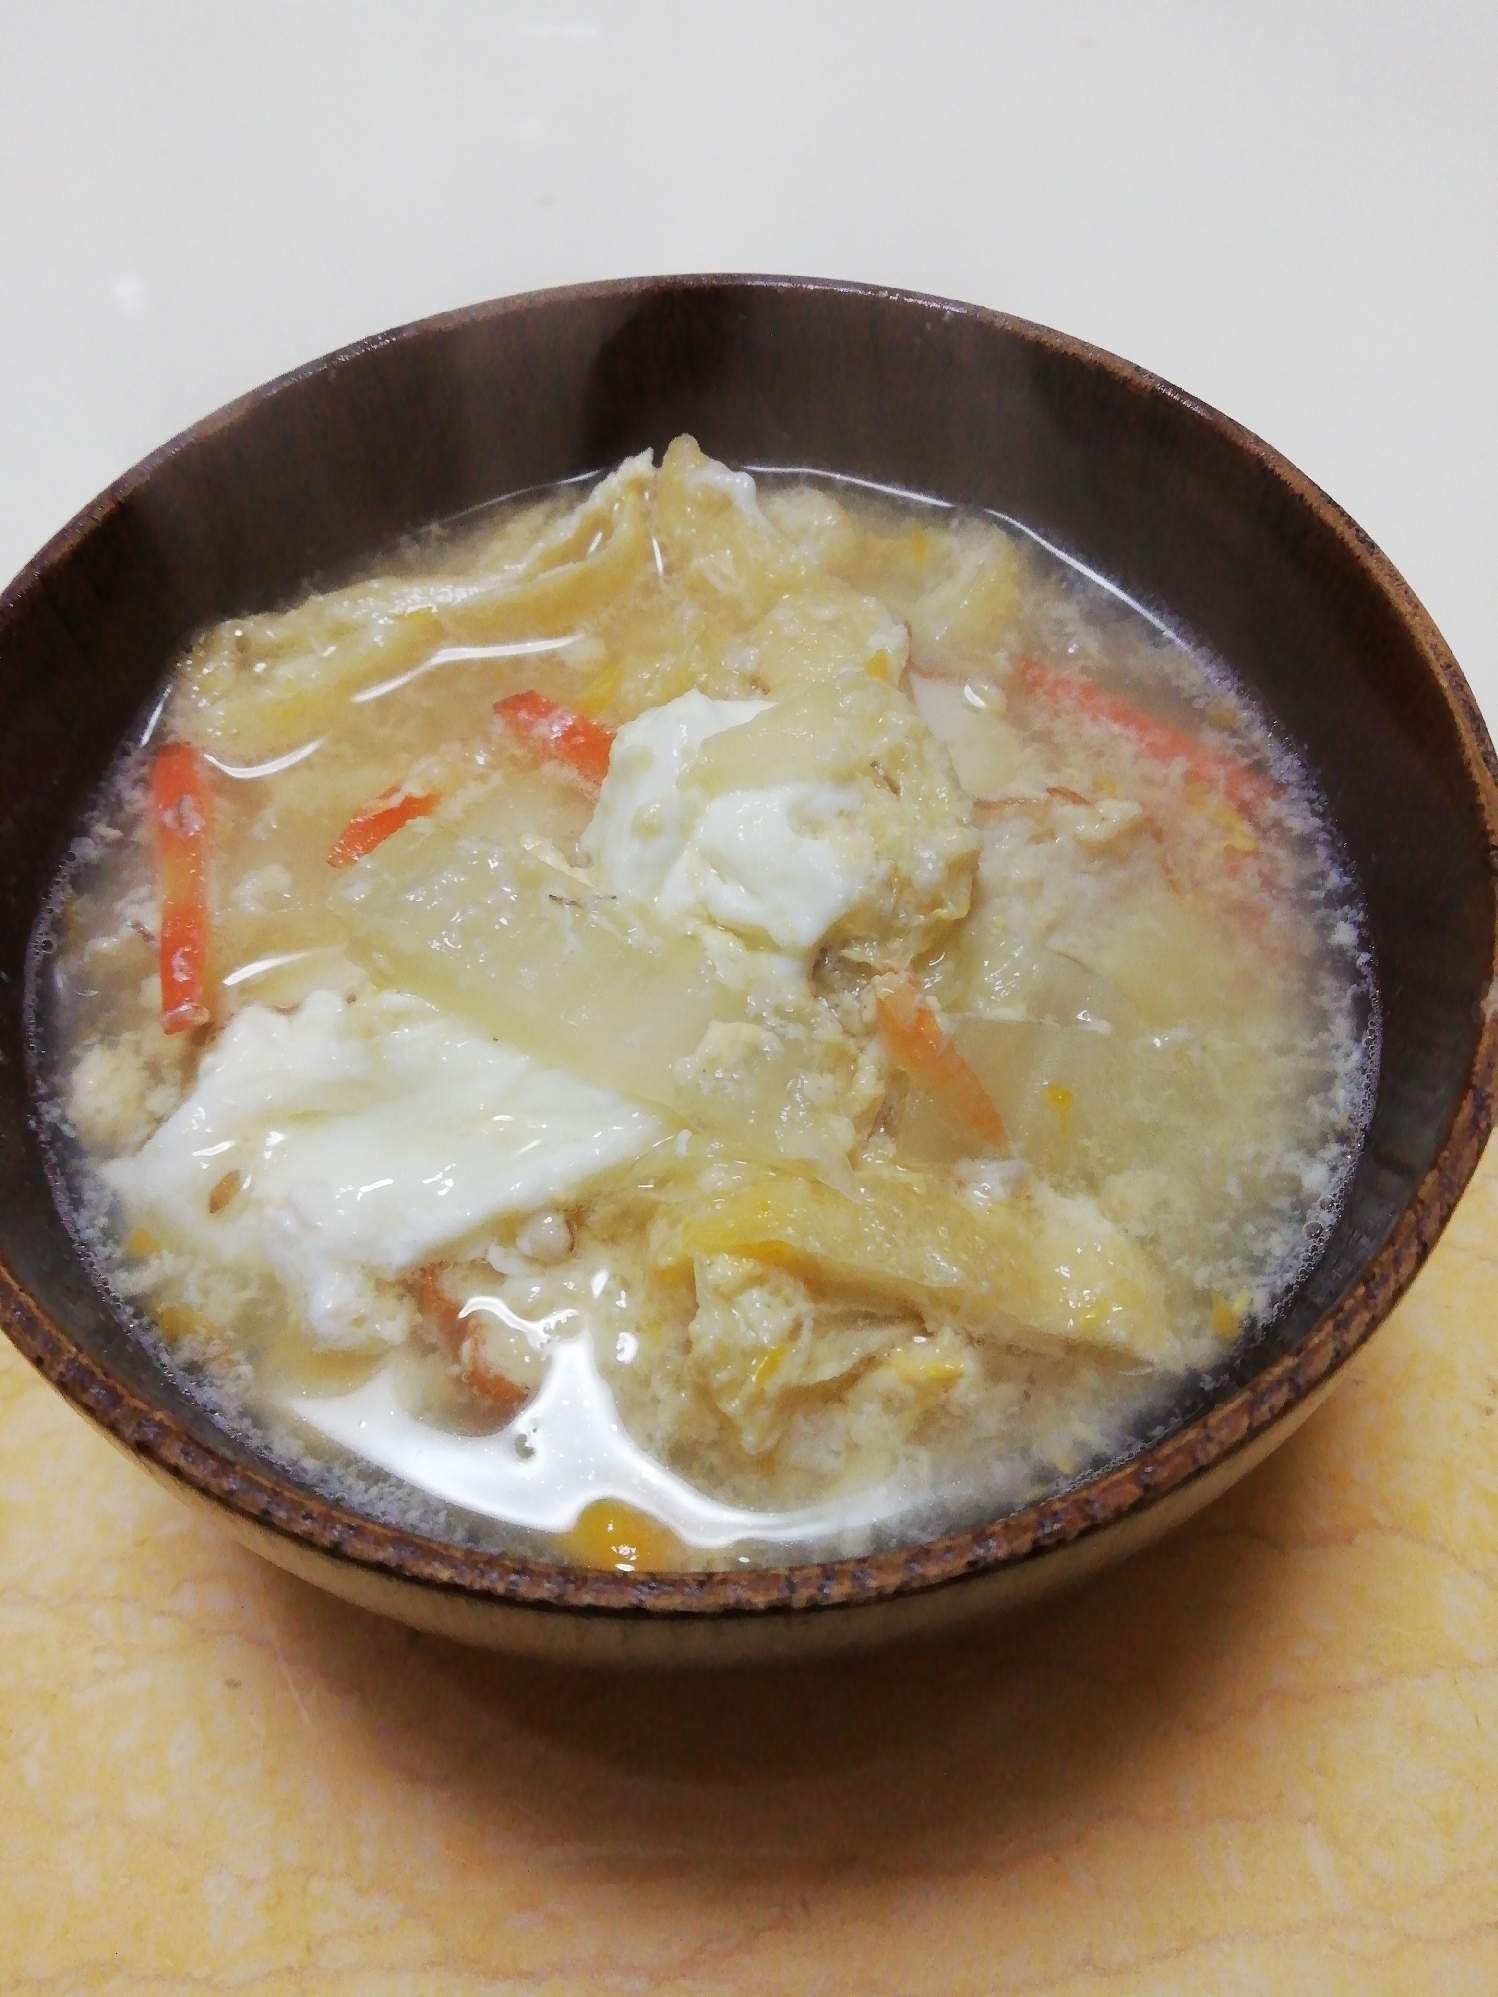 焼き豆腐竹輪と白菜と油揚げの卵とじ味噌汁